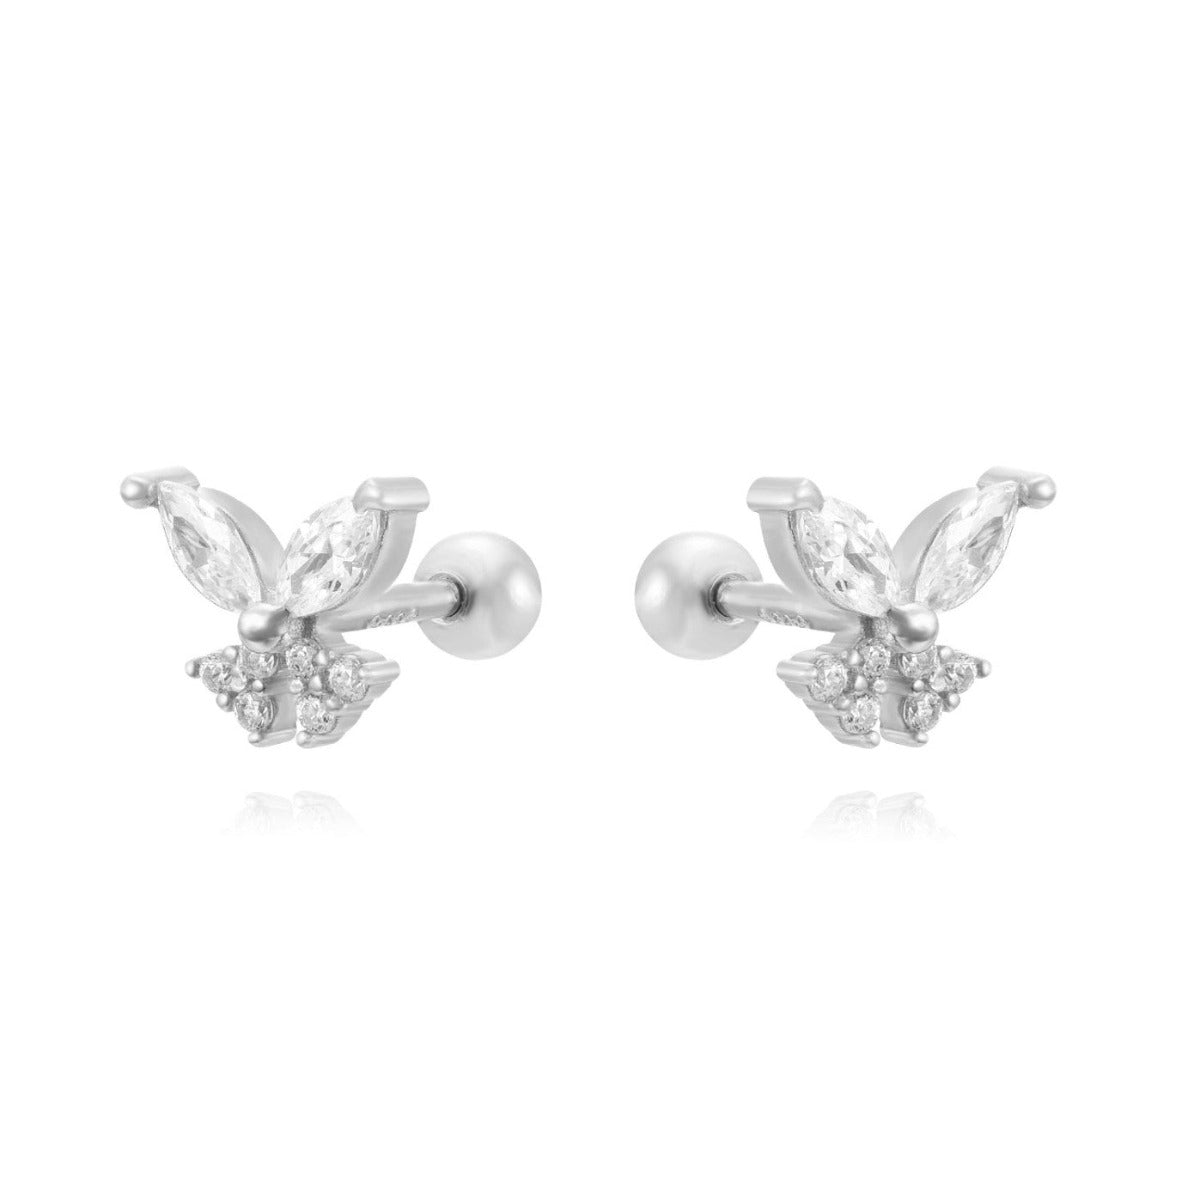 Piercings para la oreja en forma de mariposa con circonitas de colores plata